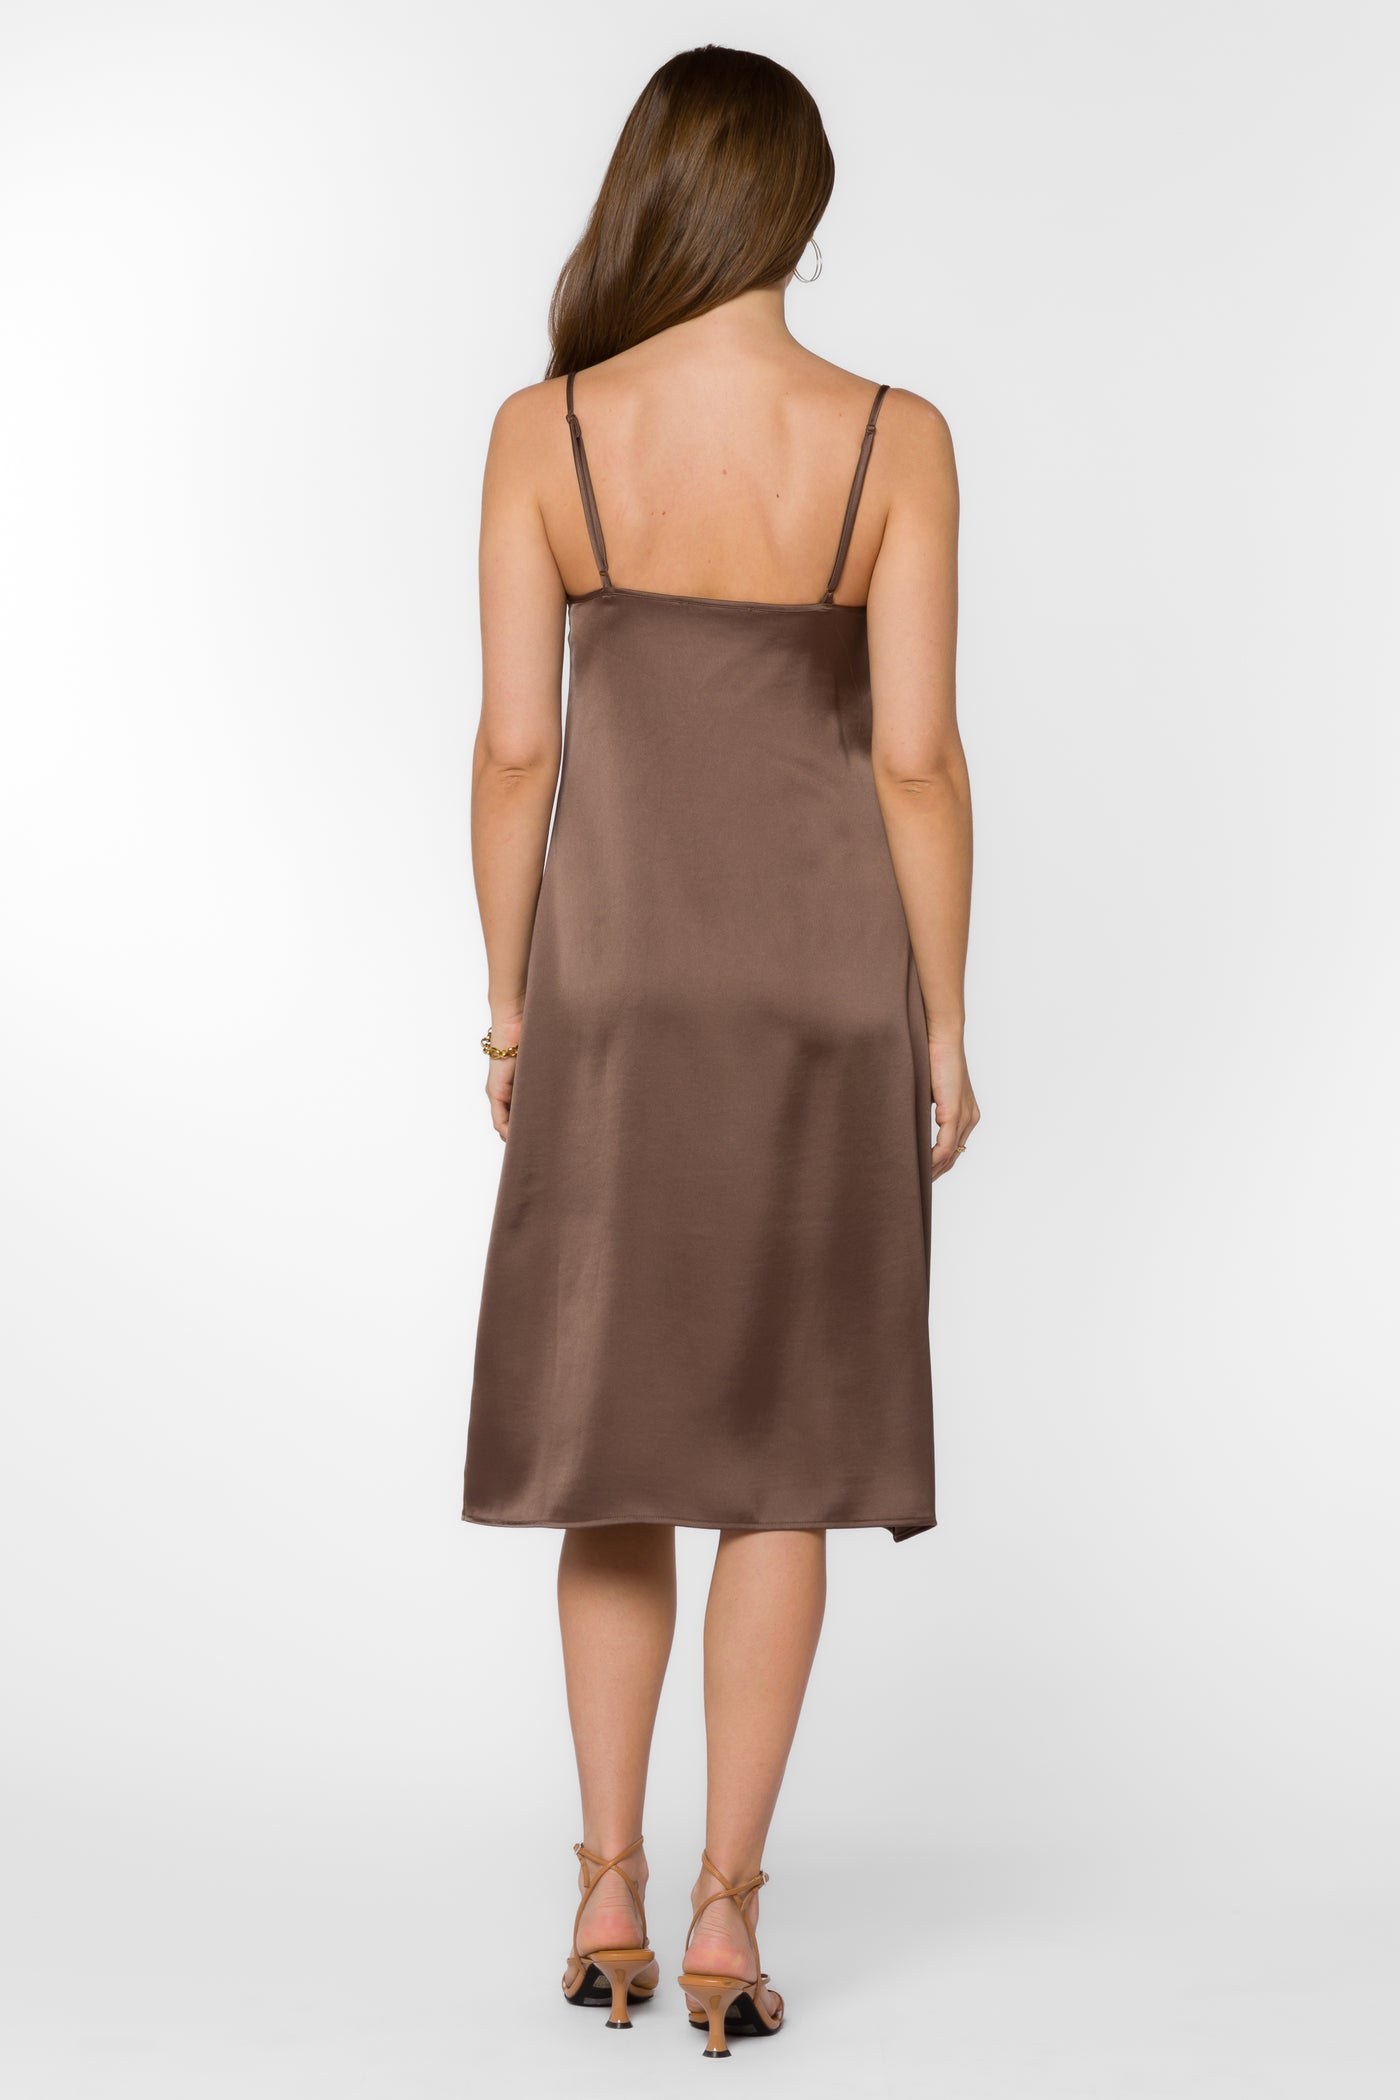 Livvy Brownie Dress - Dresses - Velvet Heart Clothing